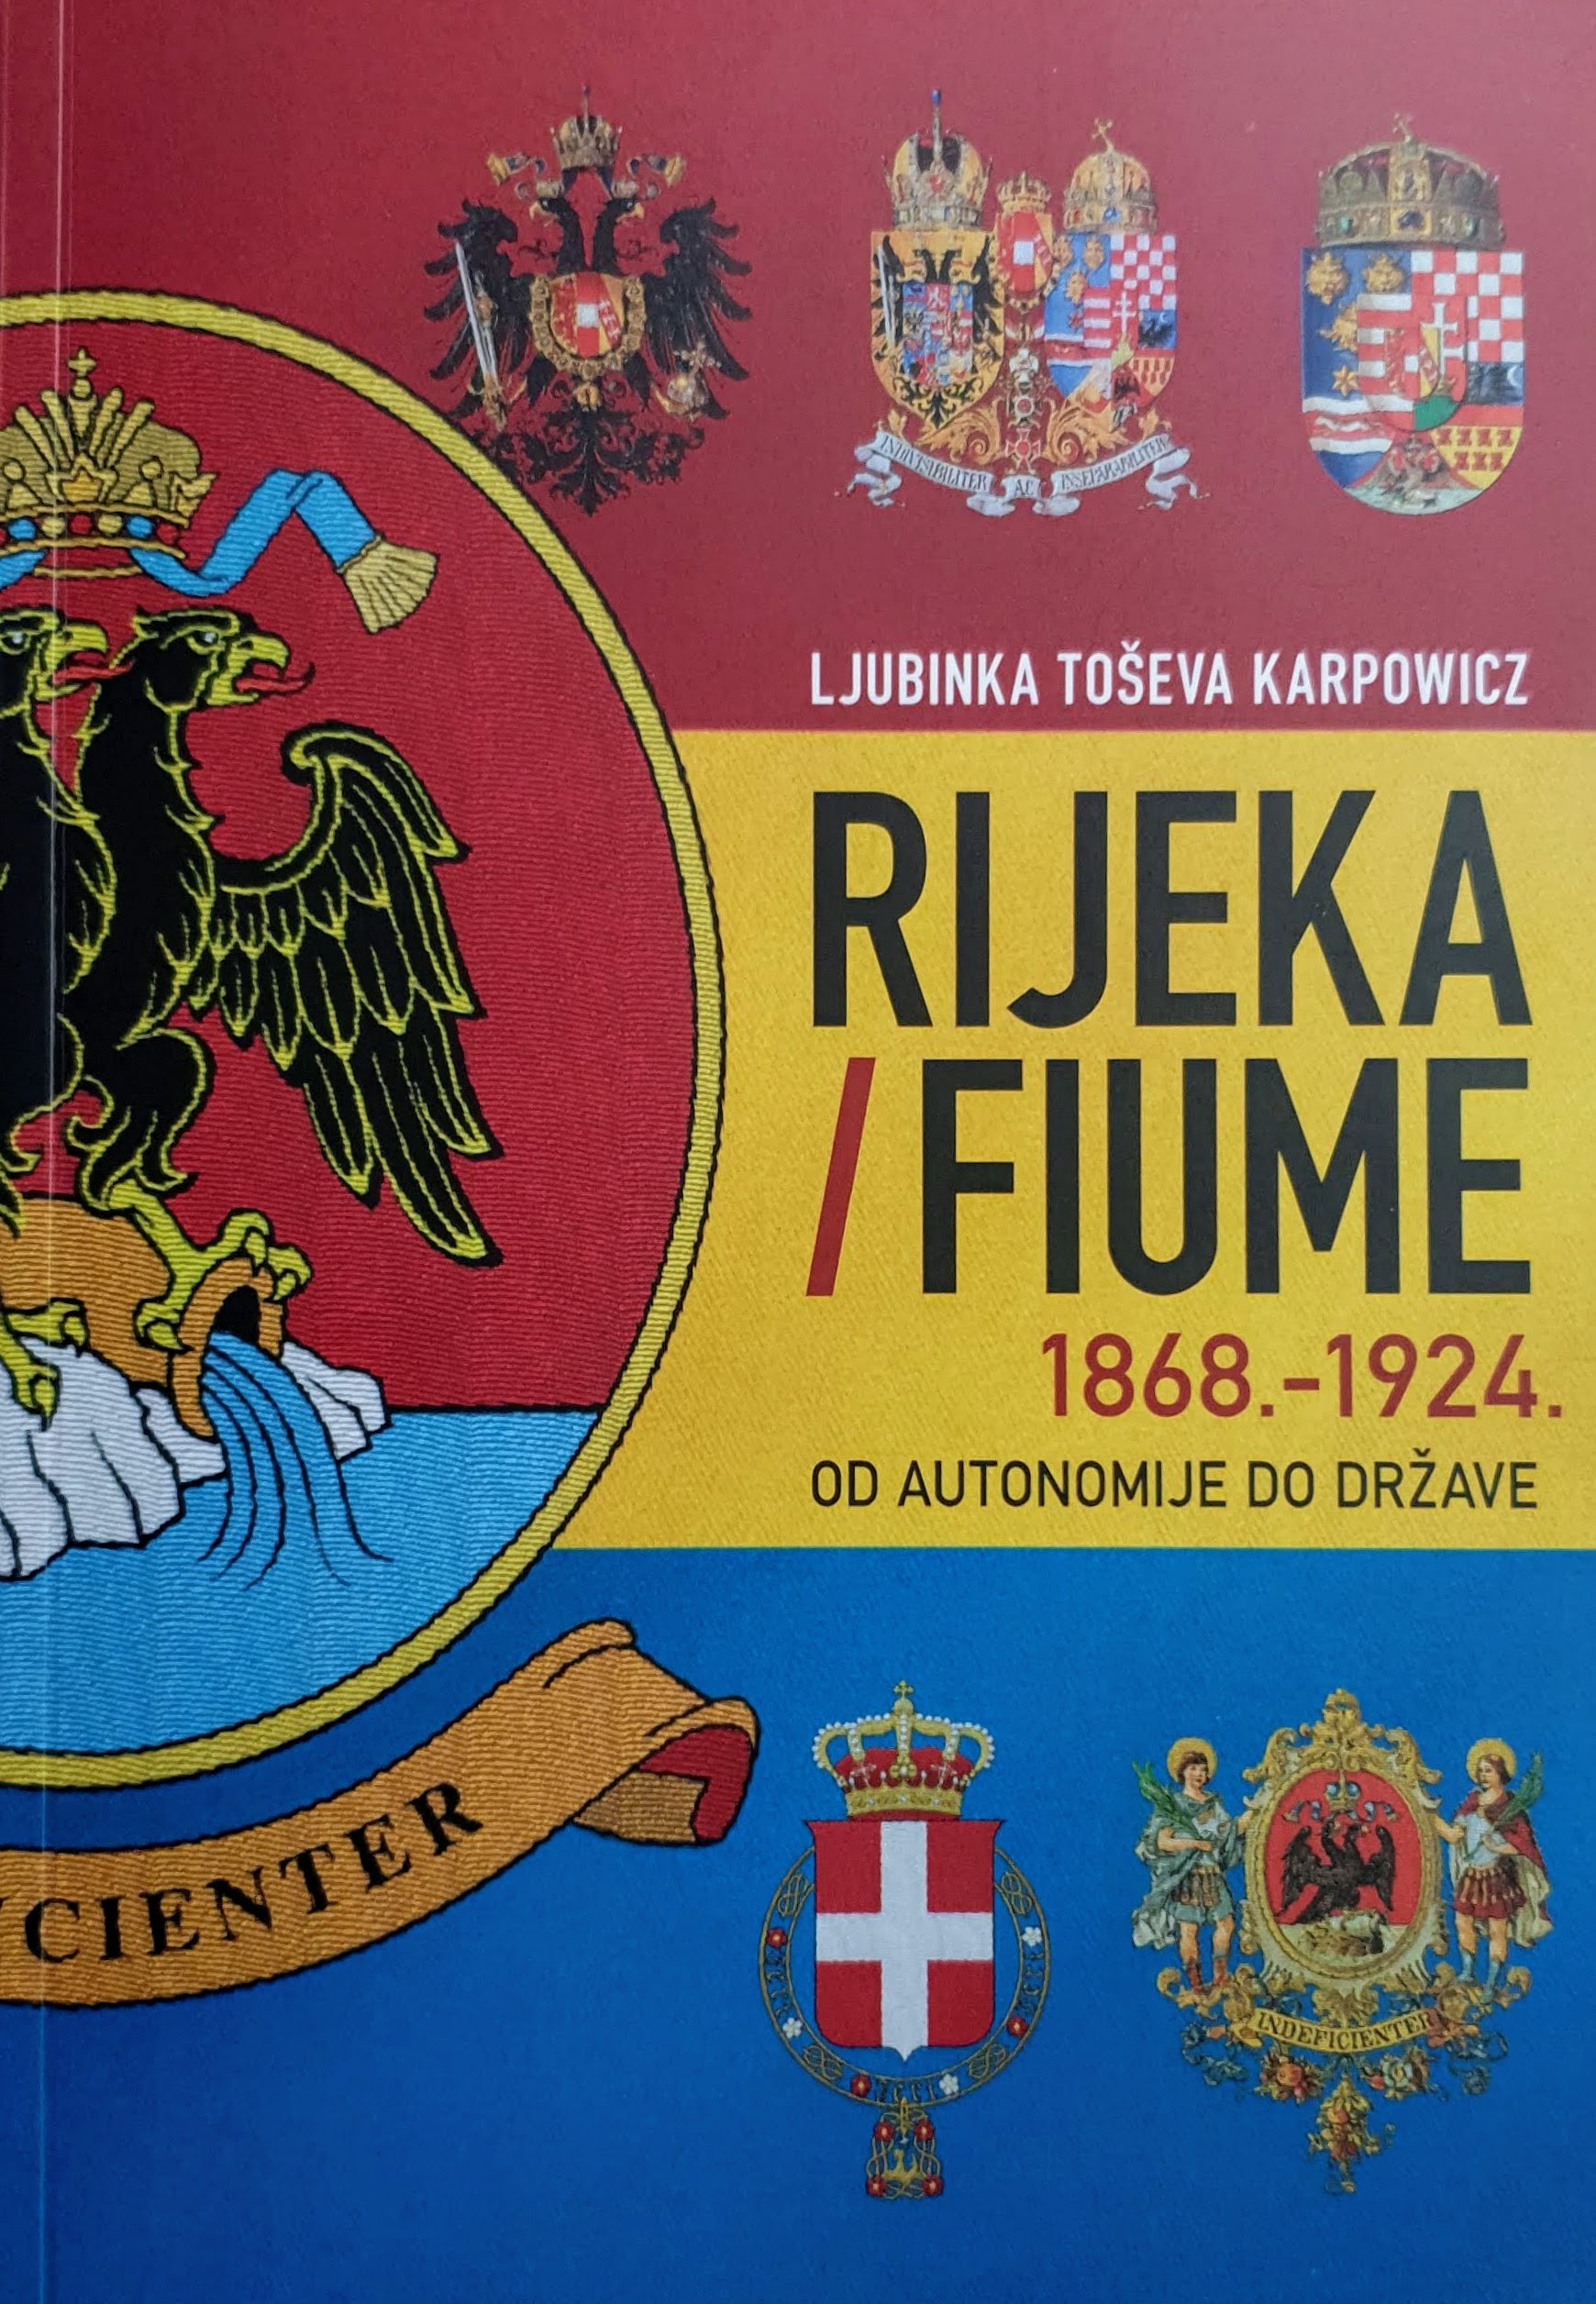 Ljubinka Karpowicz: RIJEKA / FIUME 1868.-1924. od autonomije do države